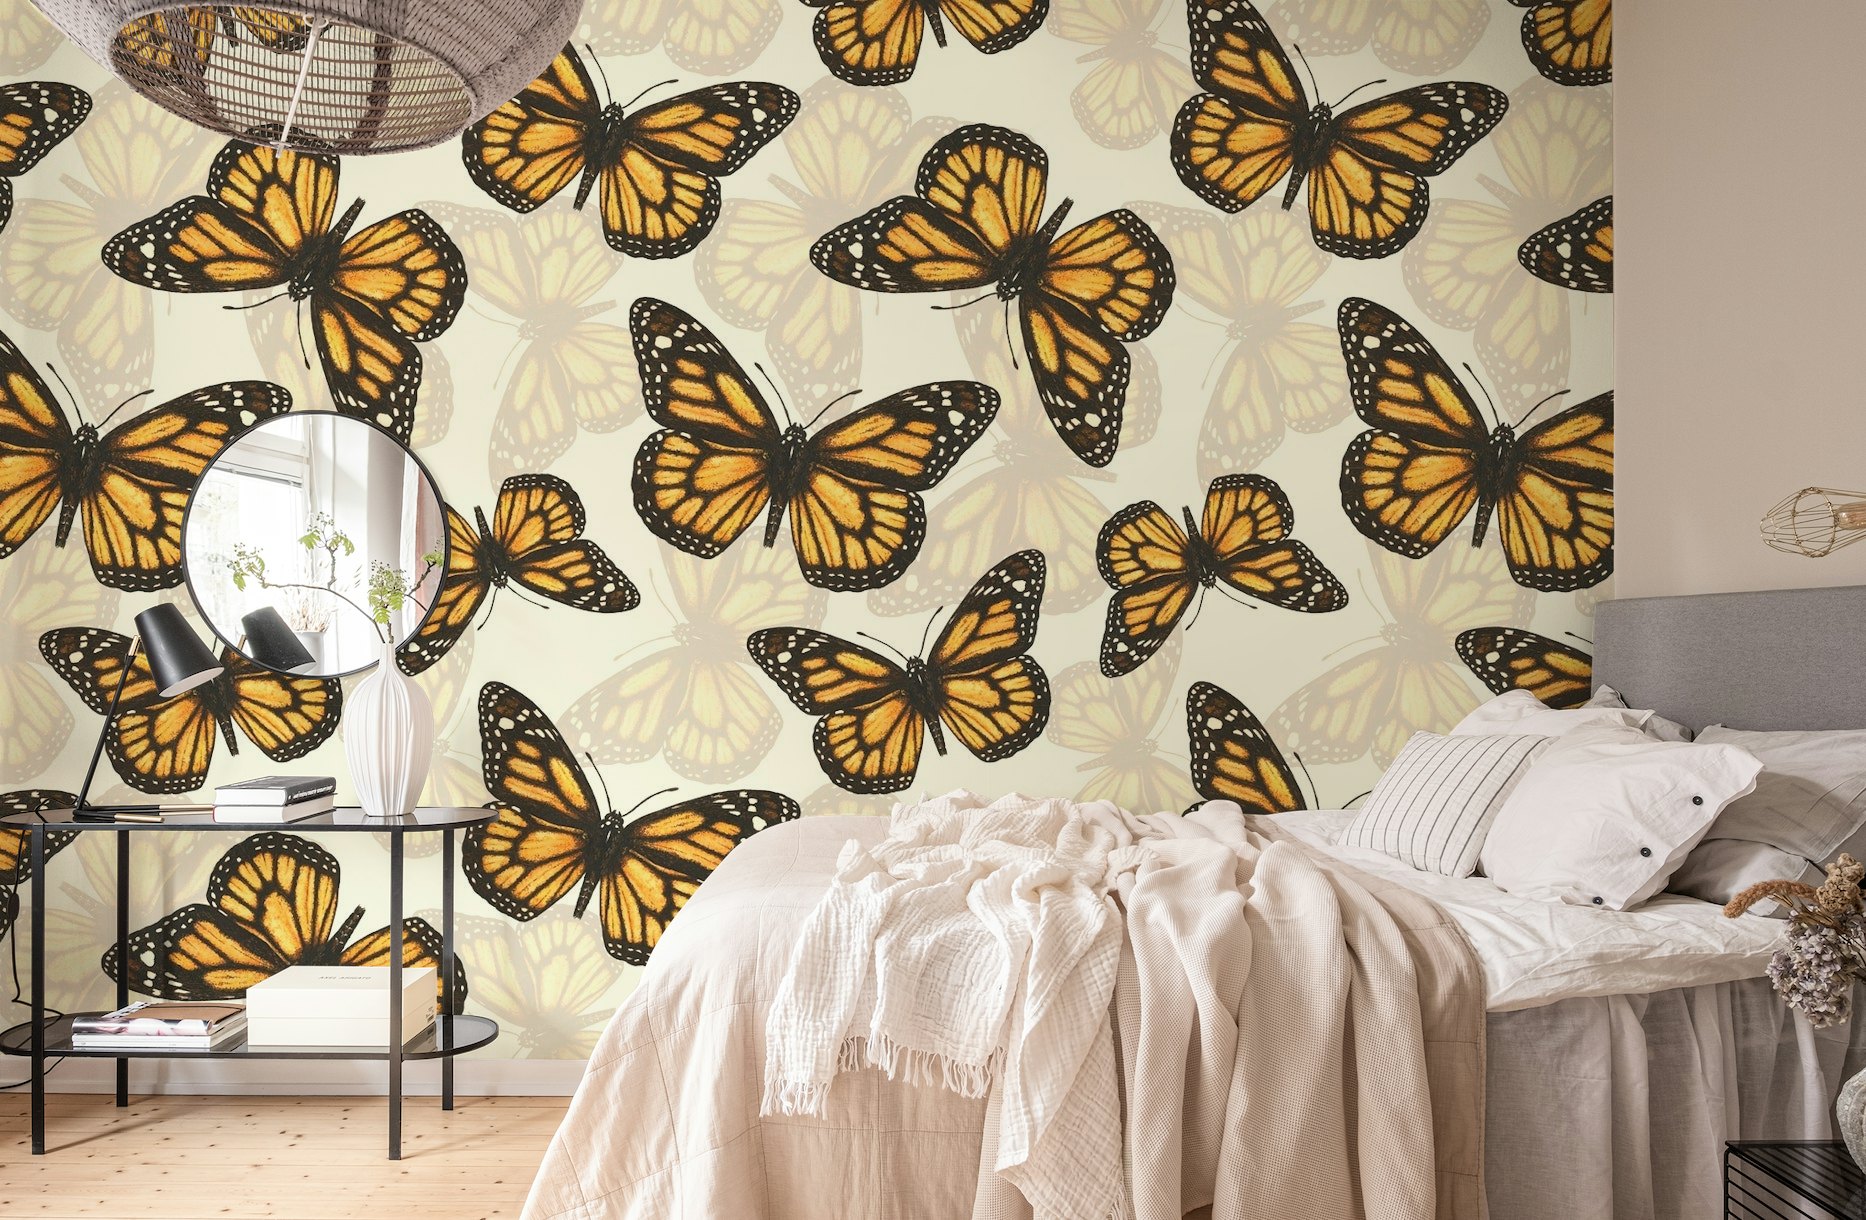 Monarch butterfly pattern wallpaper